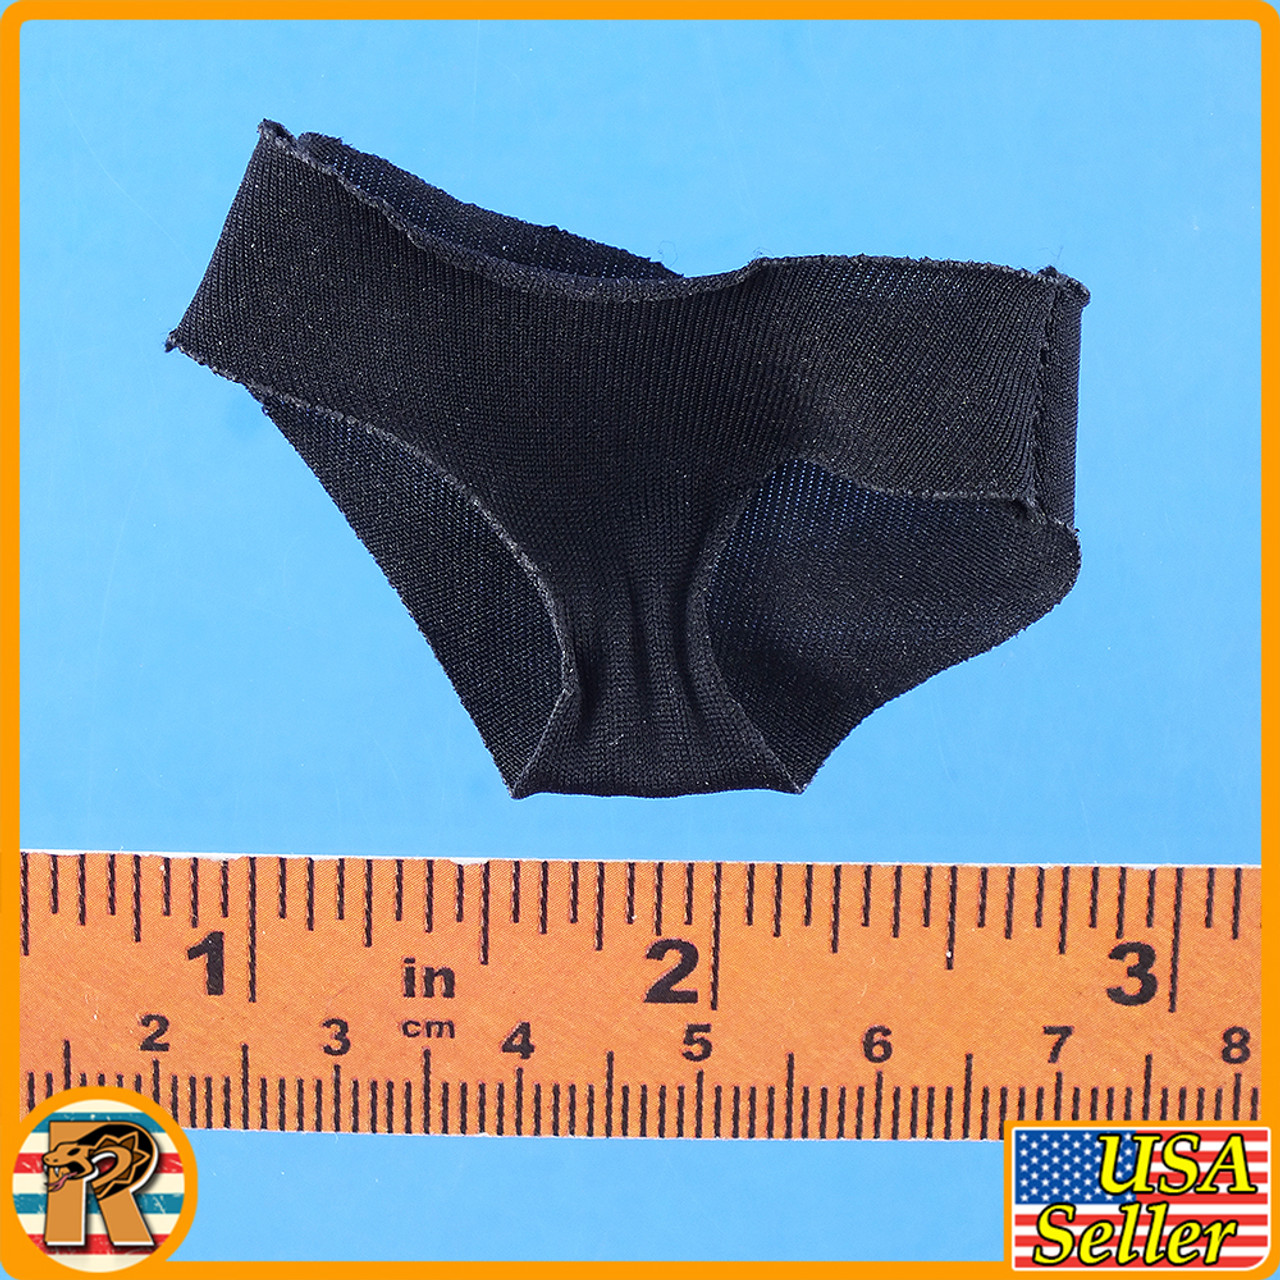 Soldier Female (Black) - Black Underwear Panties - 1/6 Scale 